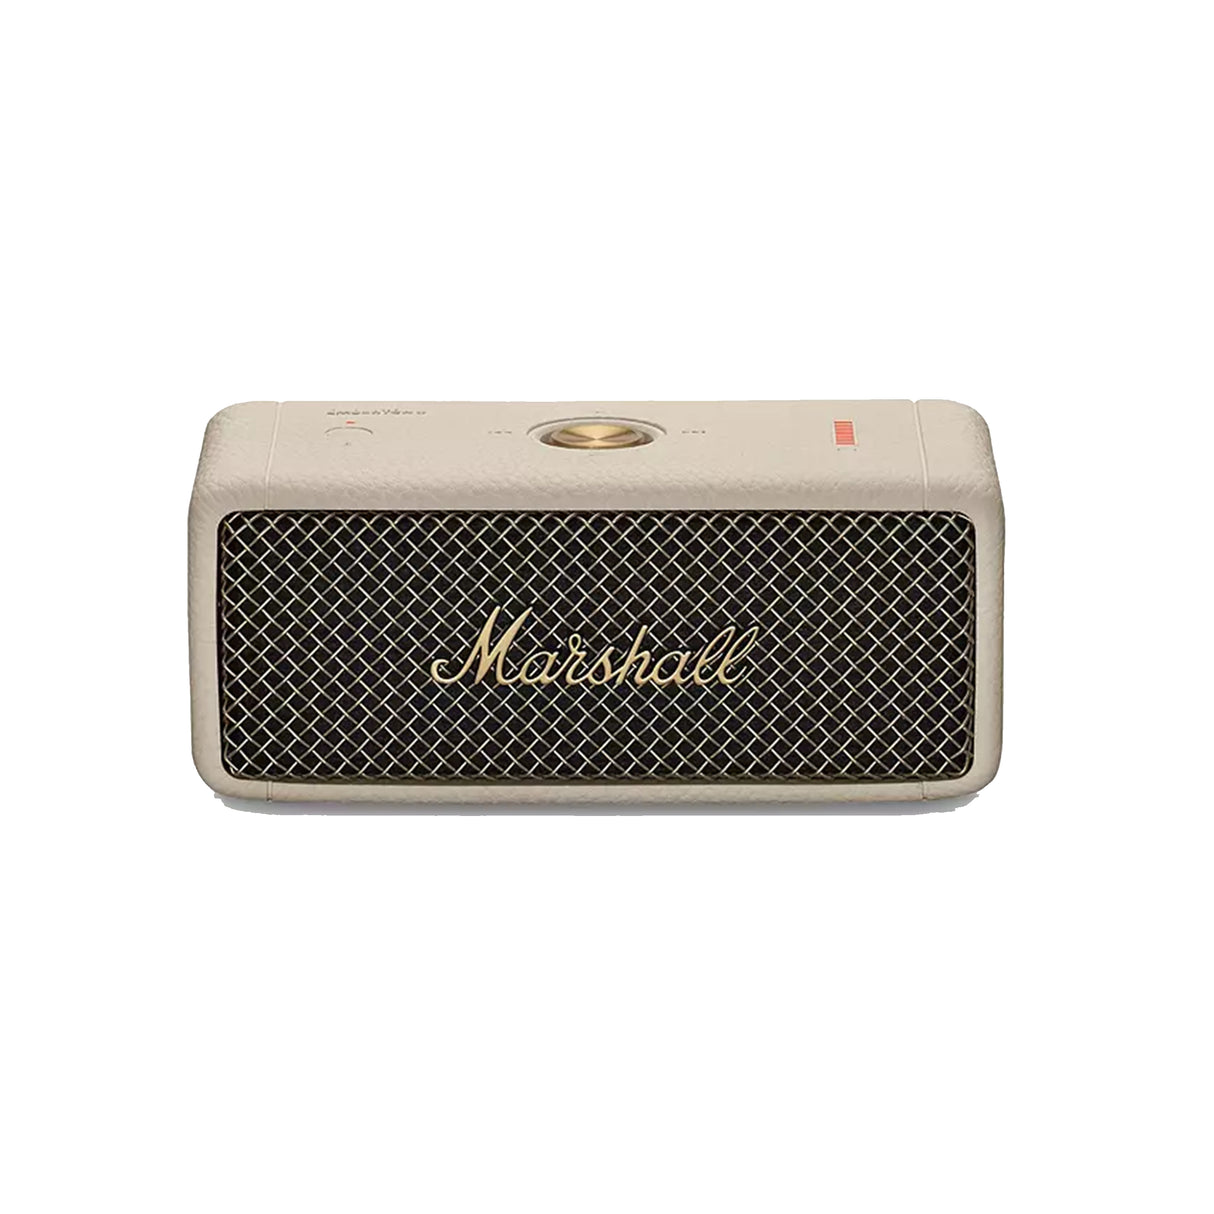 Marshall Emberton II - Portable Bluetooth Speaker (Cream)